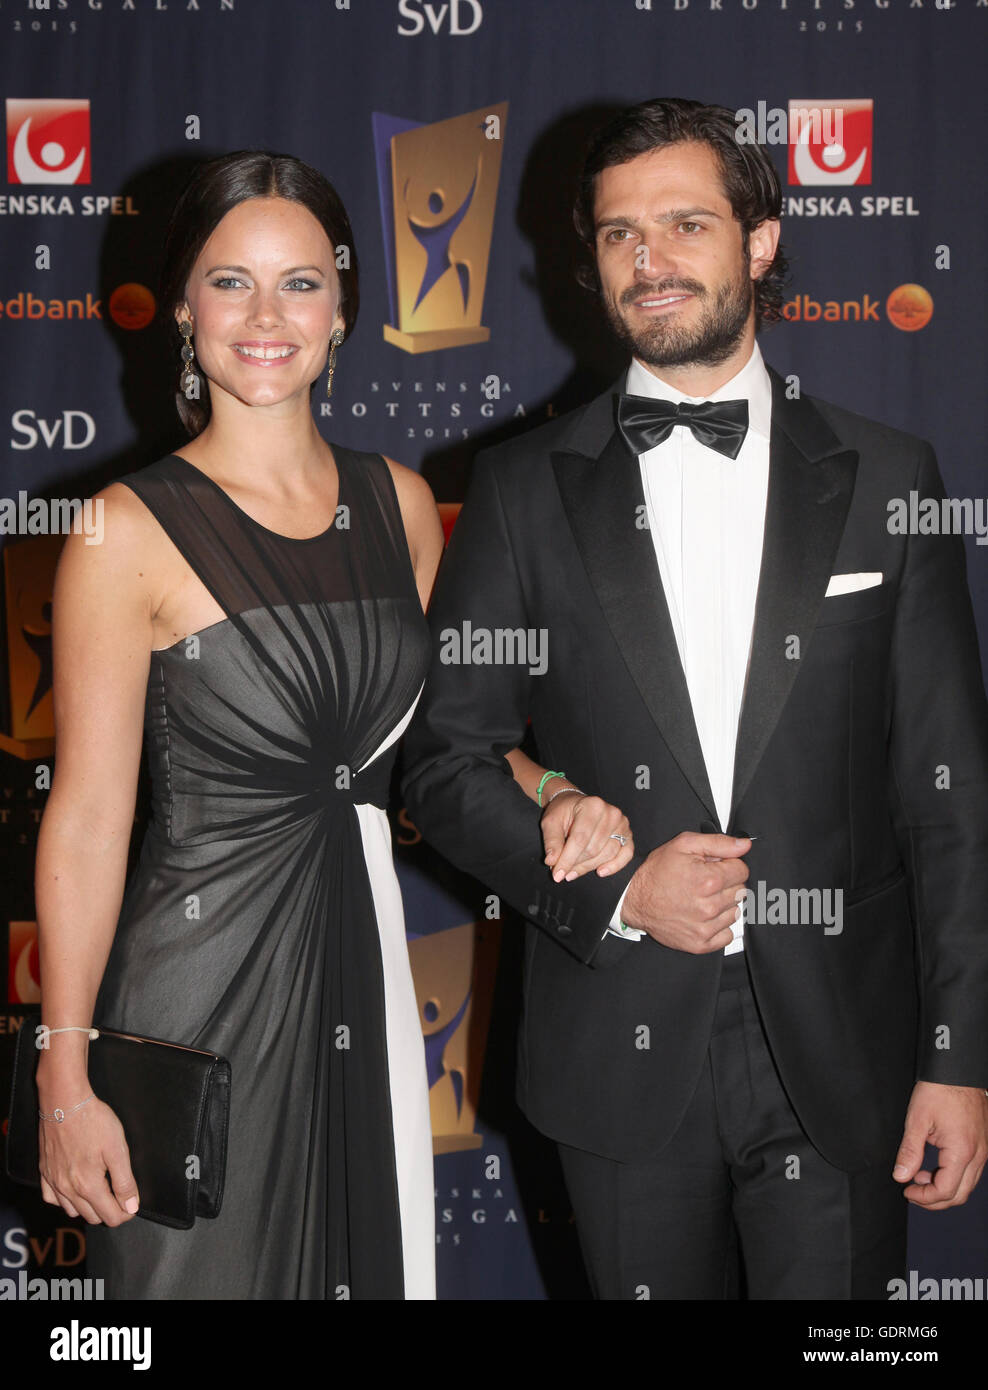 El Príncipe sueco Carl Philip con su futura esposa Sofía Hellqvist en sueco gala deportiva Foto de stock